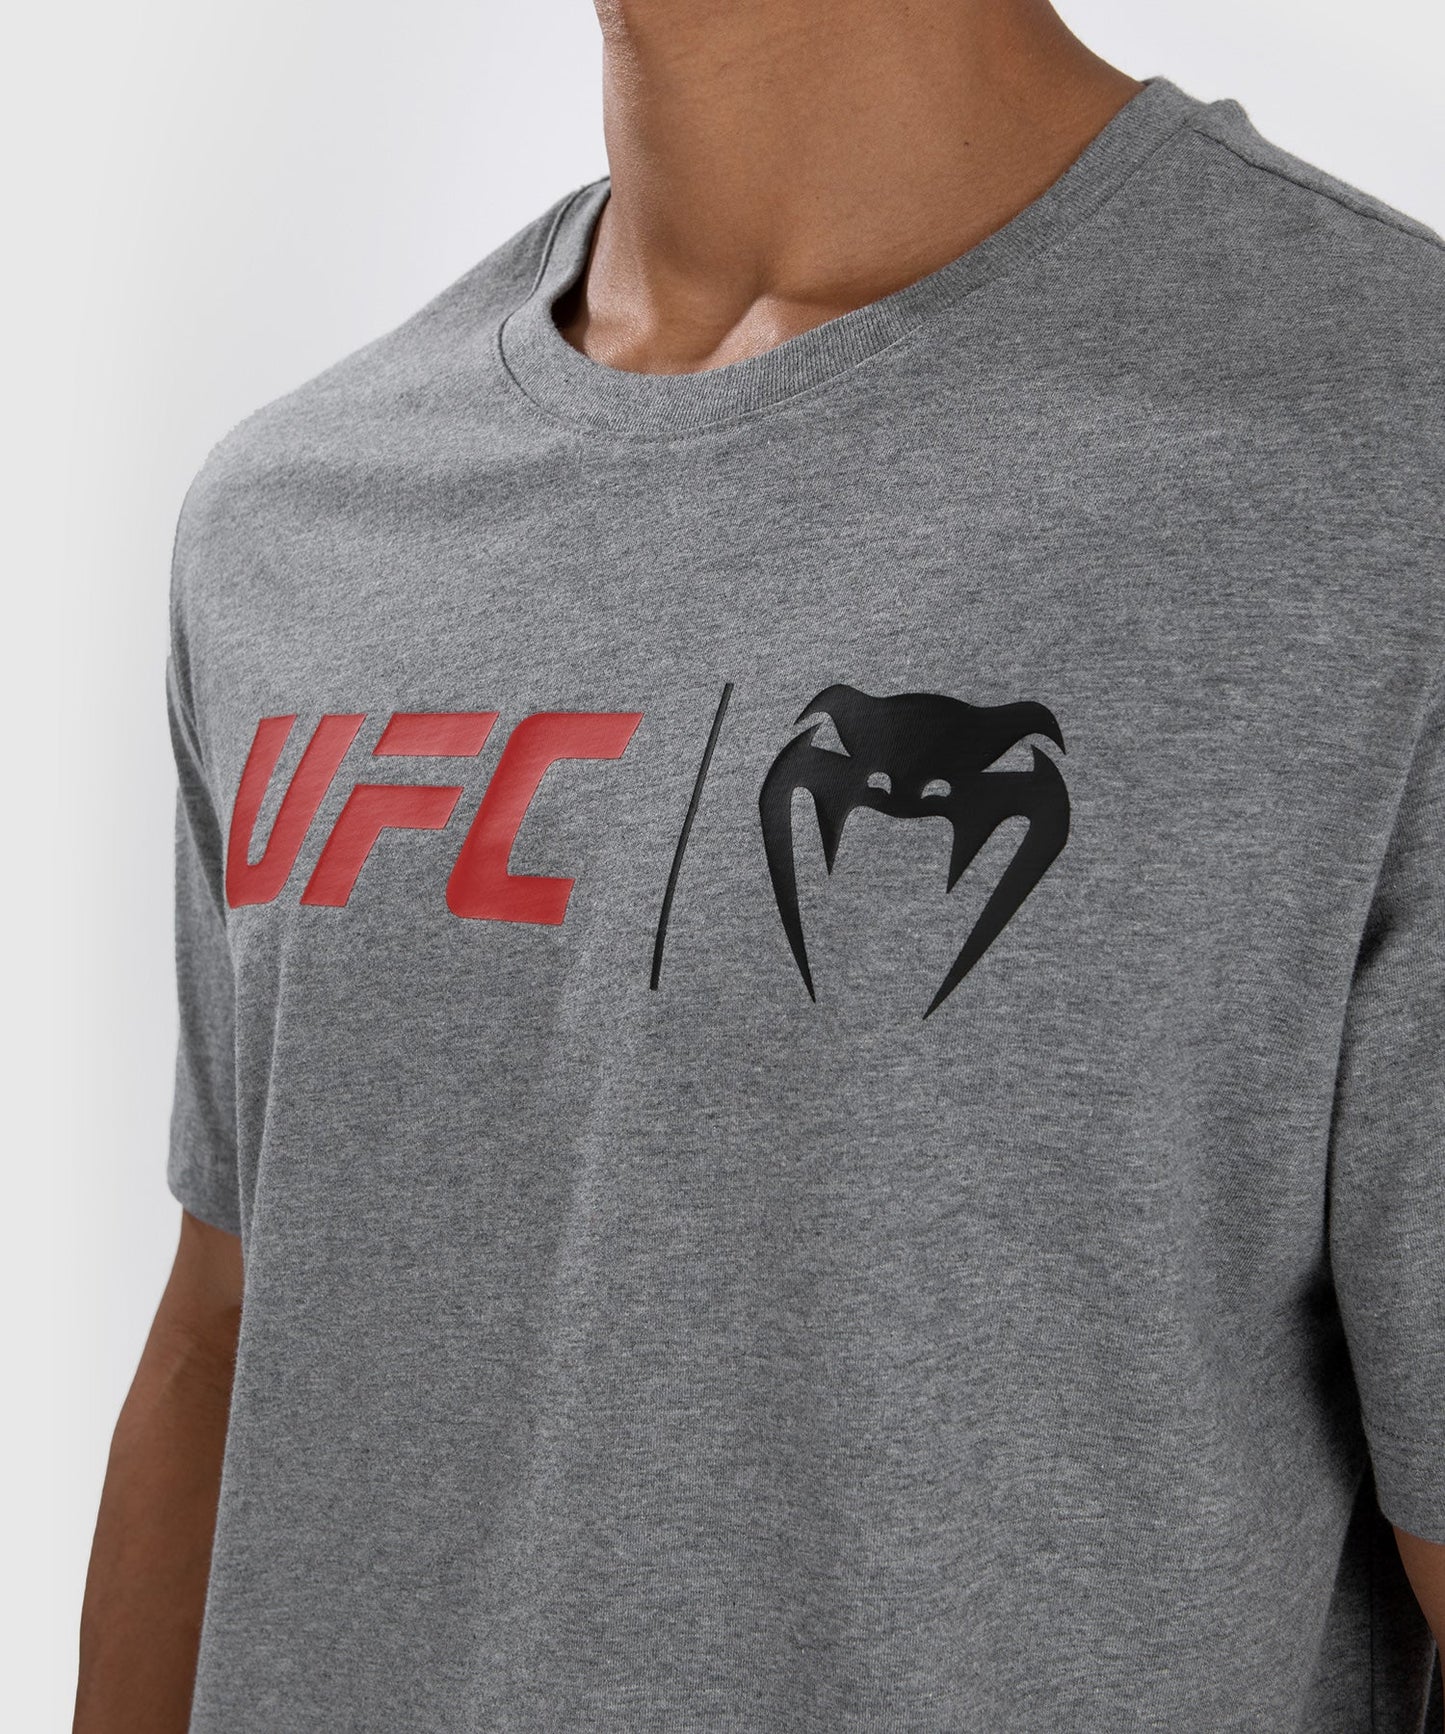 UFC Venum Classic T-Shirt - Grau/Rot